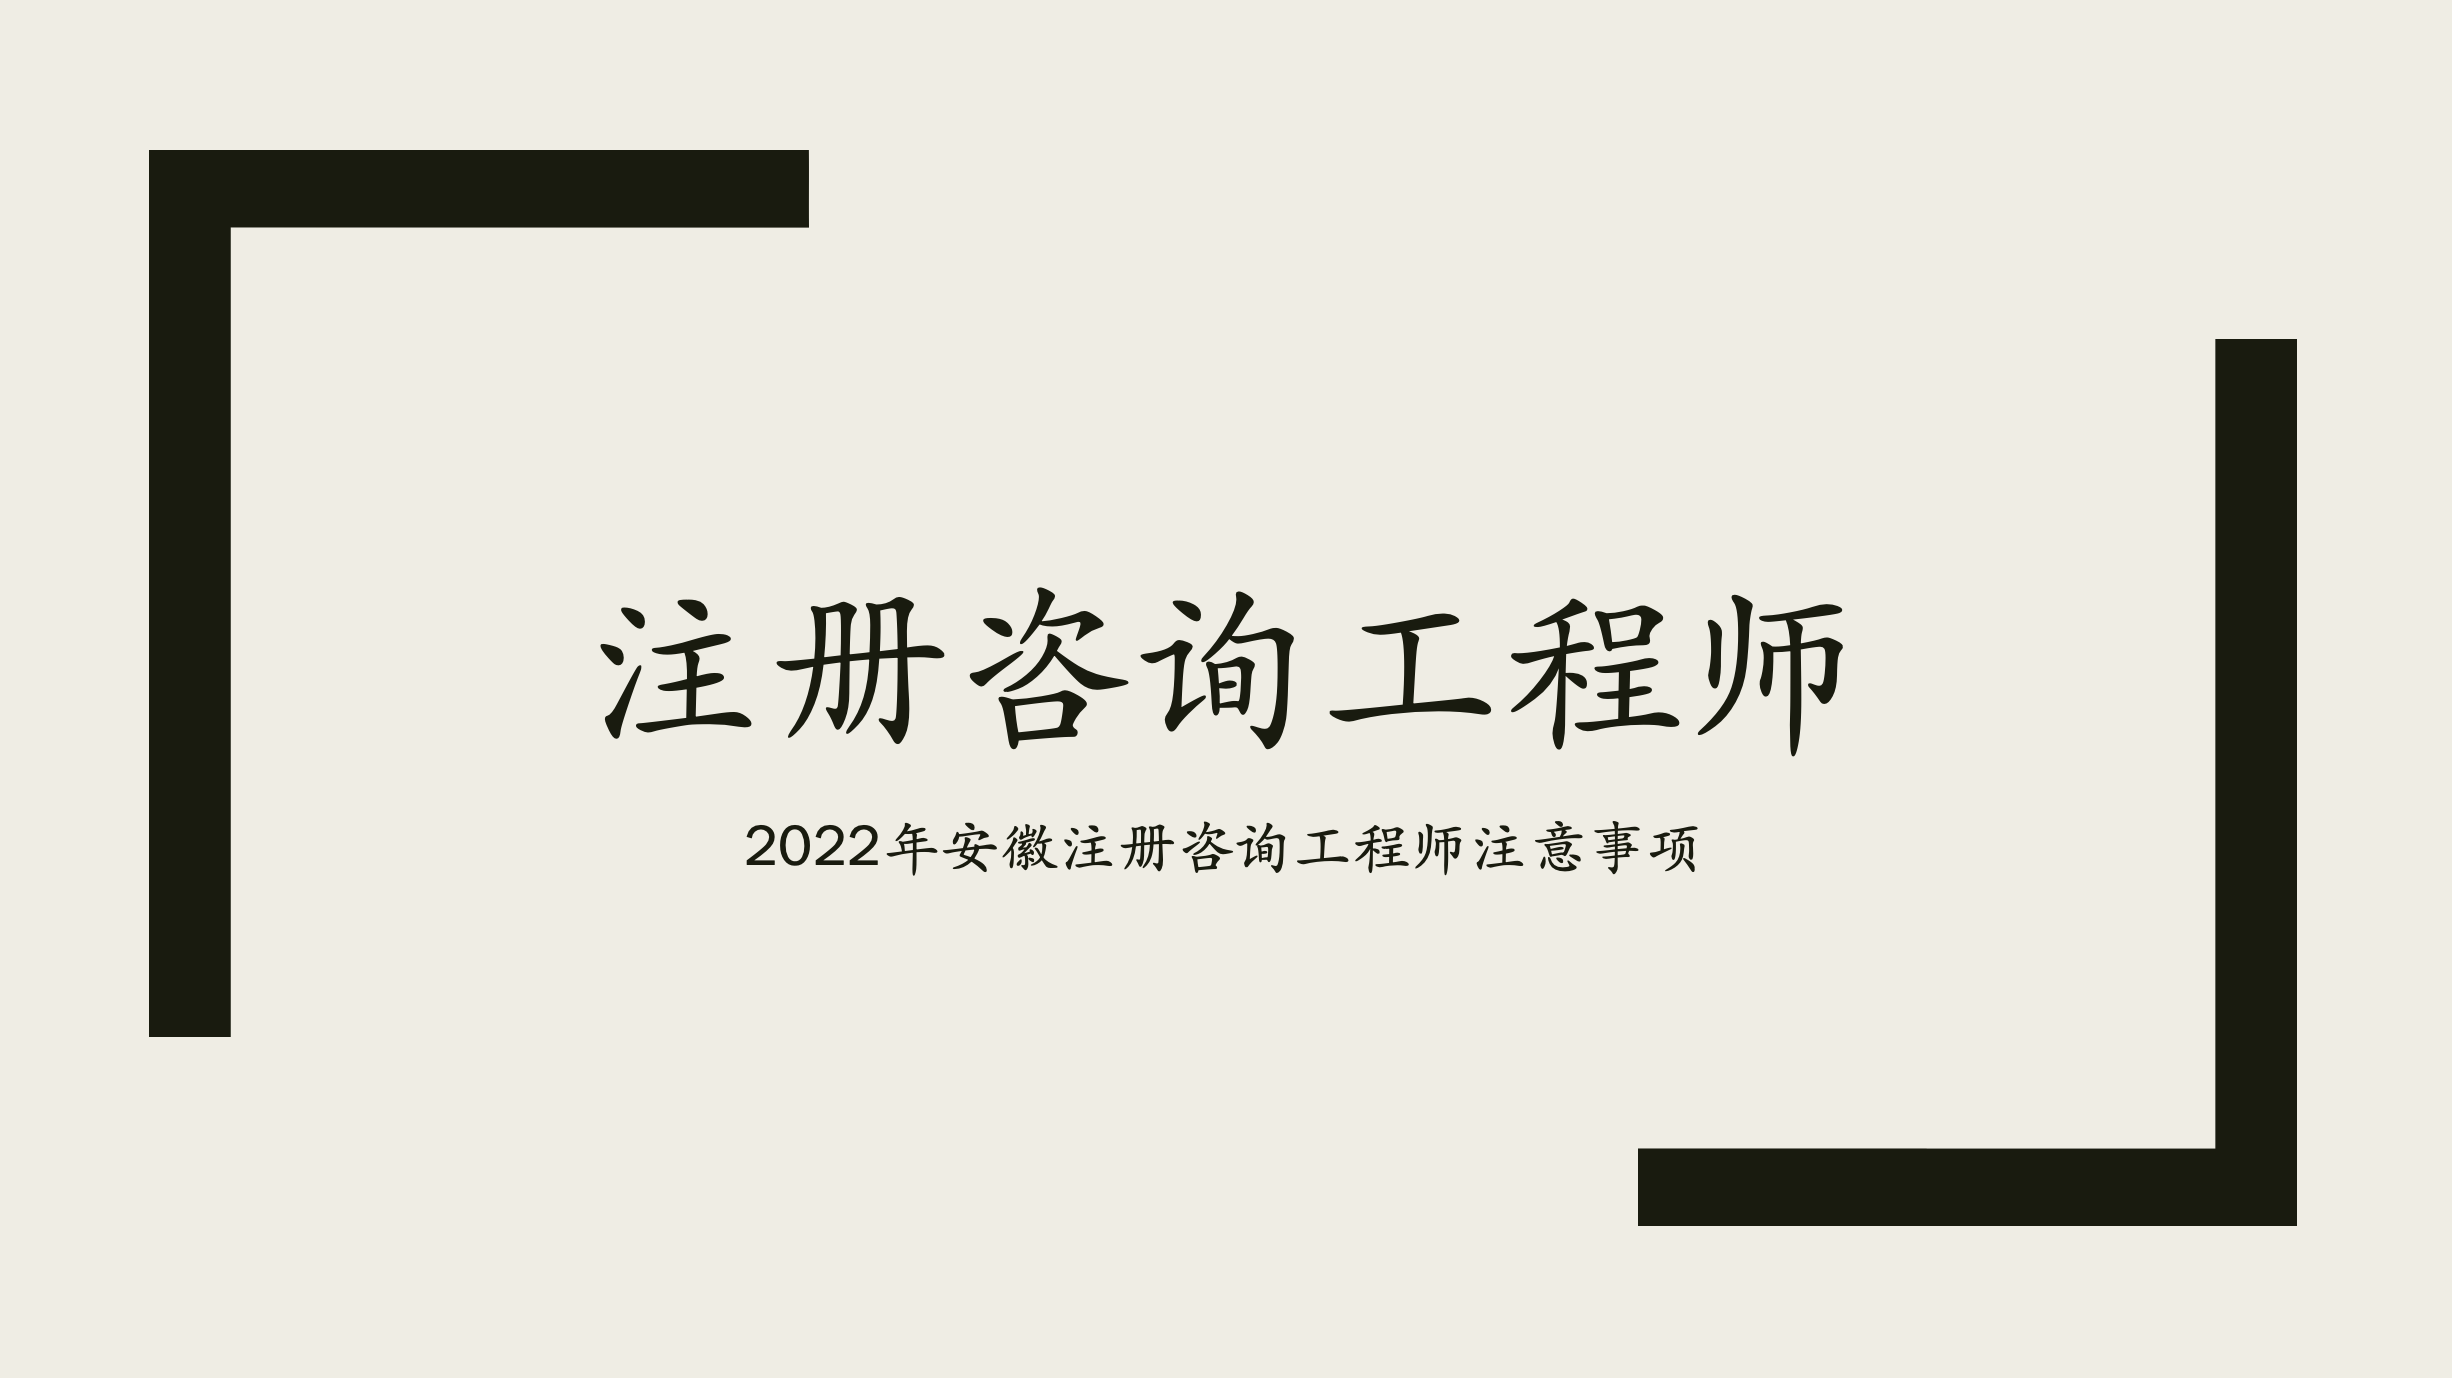 2022安徽注册咨询工程师考试后续事项通知